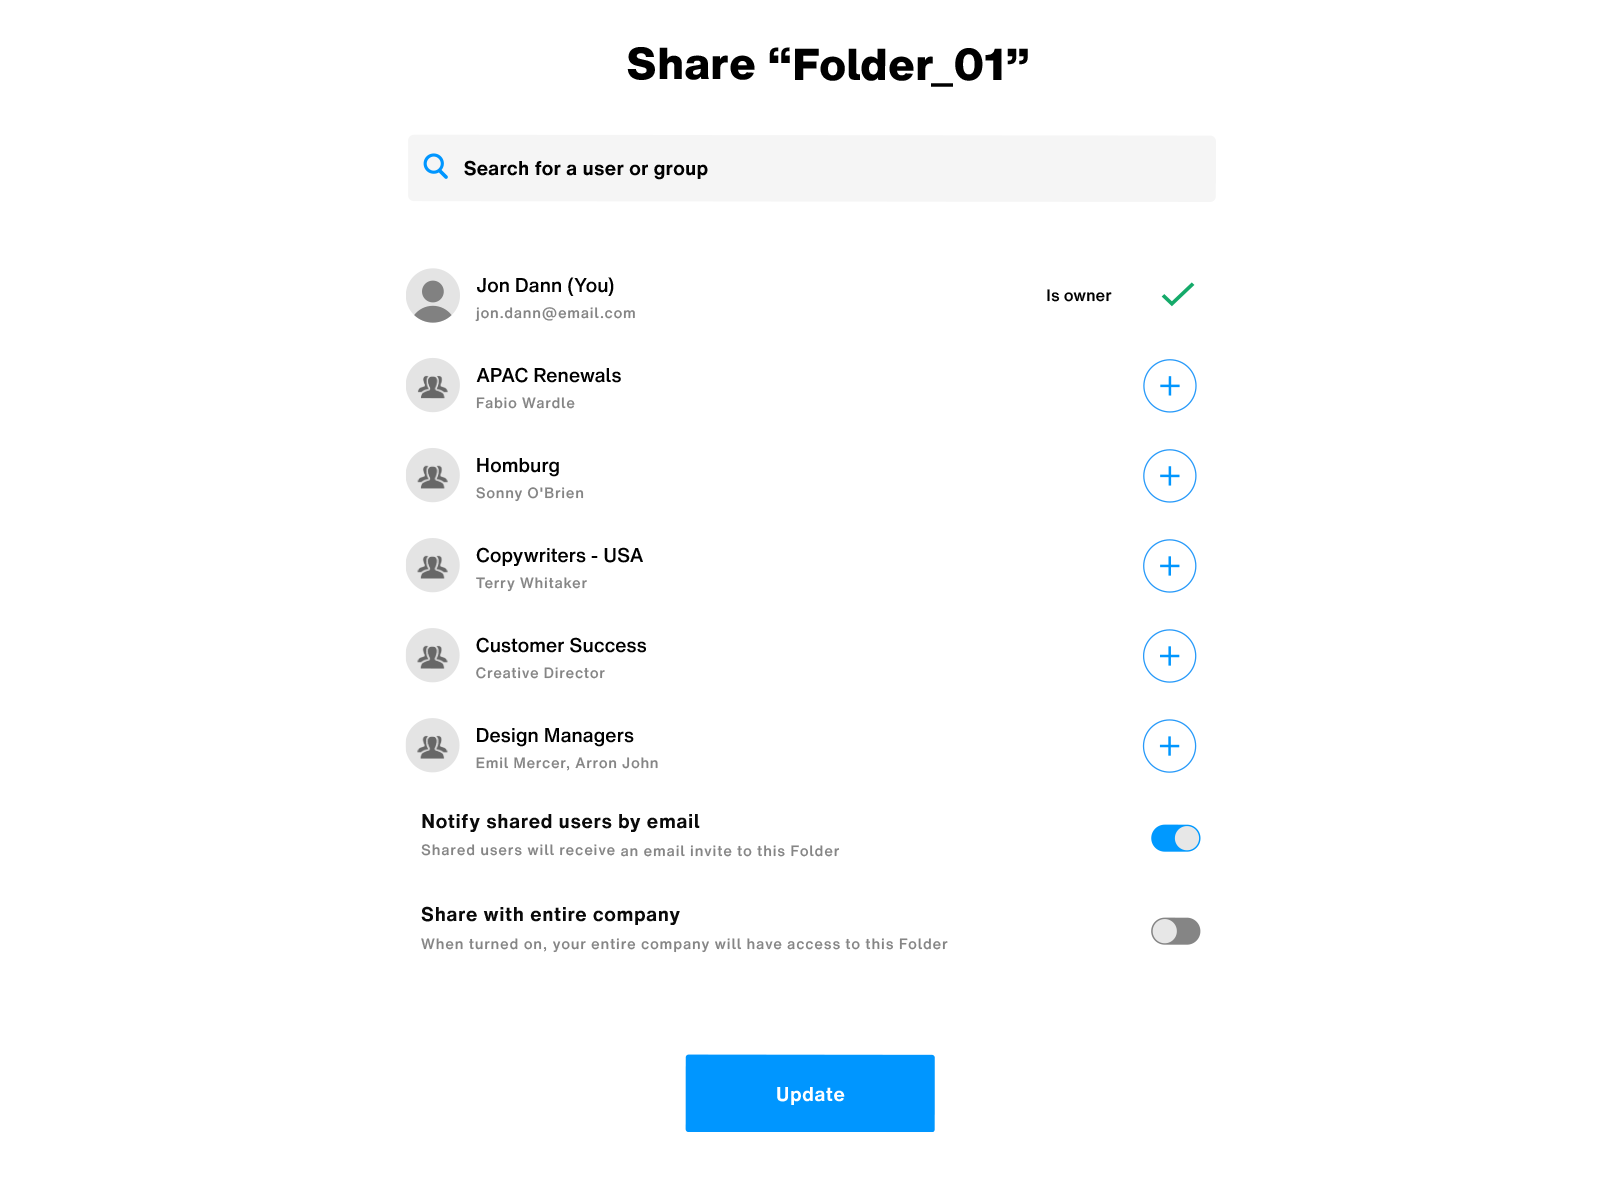 Share folder 01